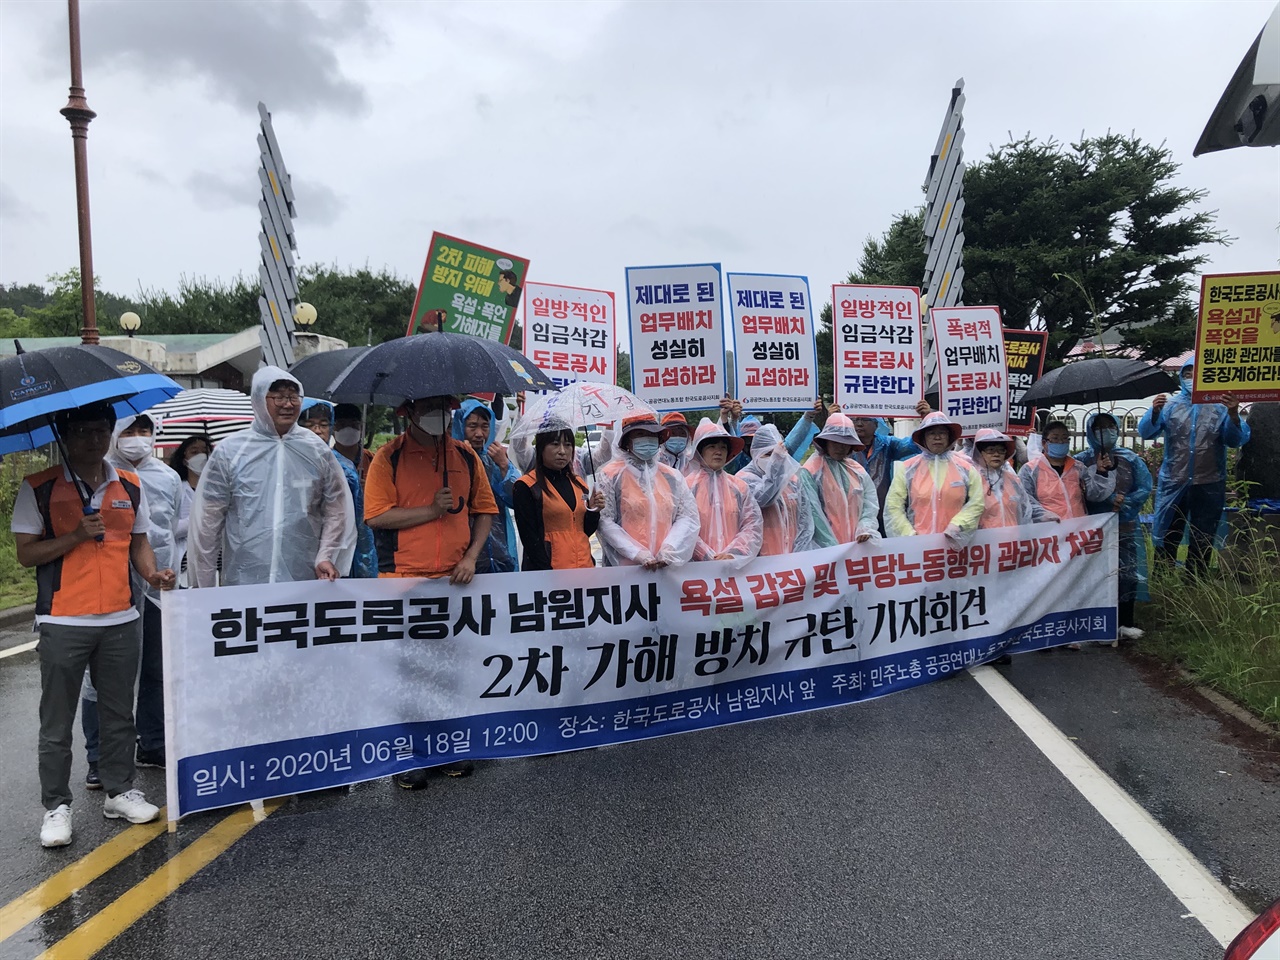 한국도로공사 남원지사 부당노동행위 관리자 처벌, 2차 가해 방치 규탄 기자회견 6월18일 한국도로공사 남원지사에서 발생한 부당노동행위에 대해 노조원들이 항의하고 있다.